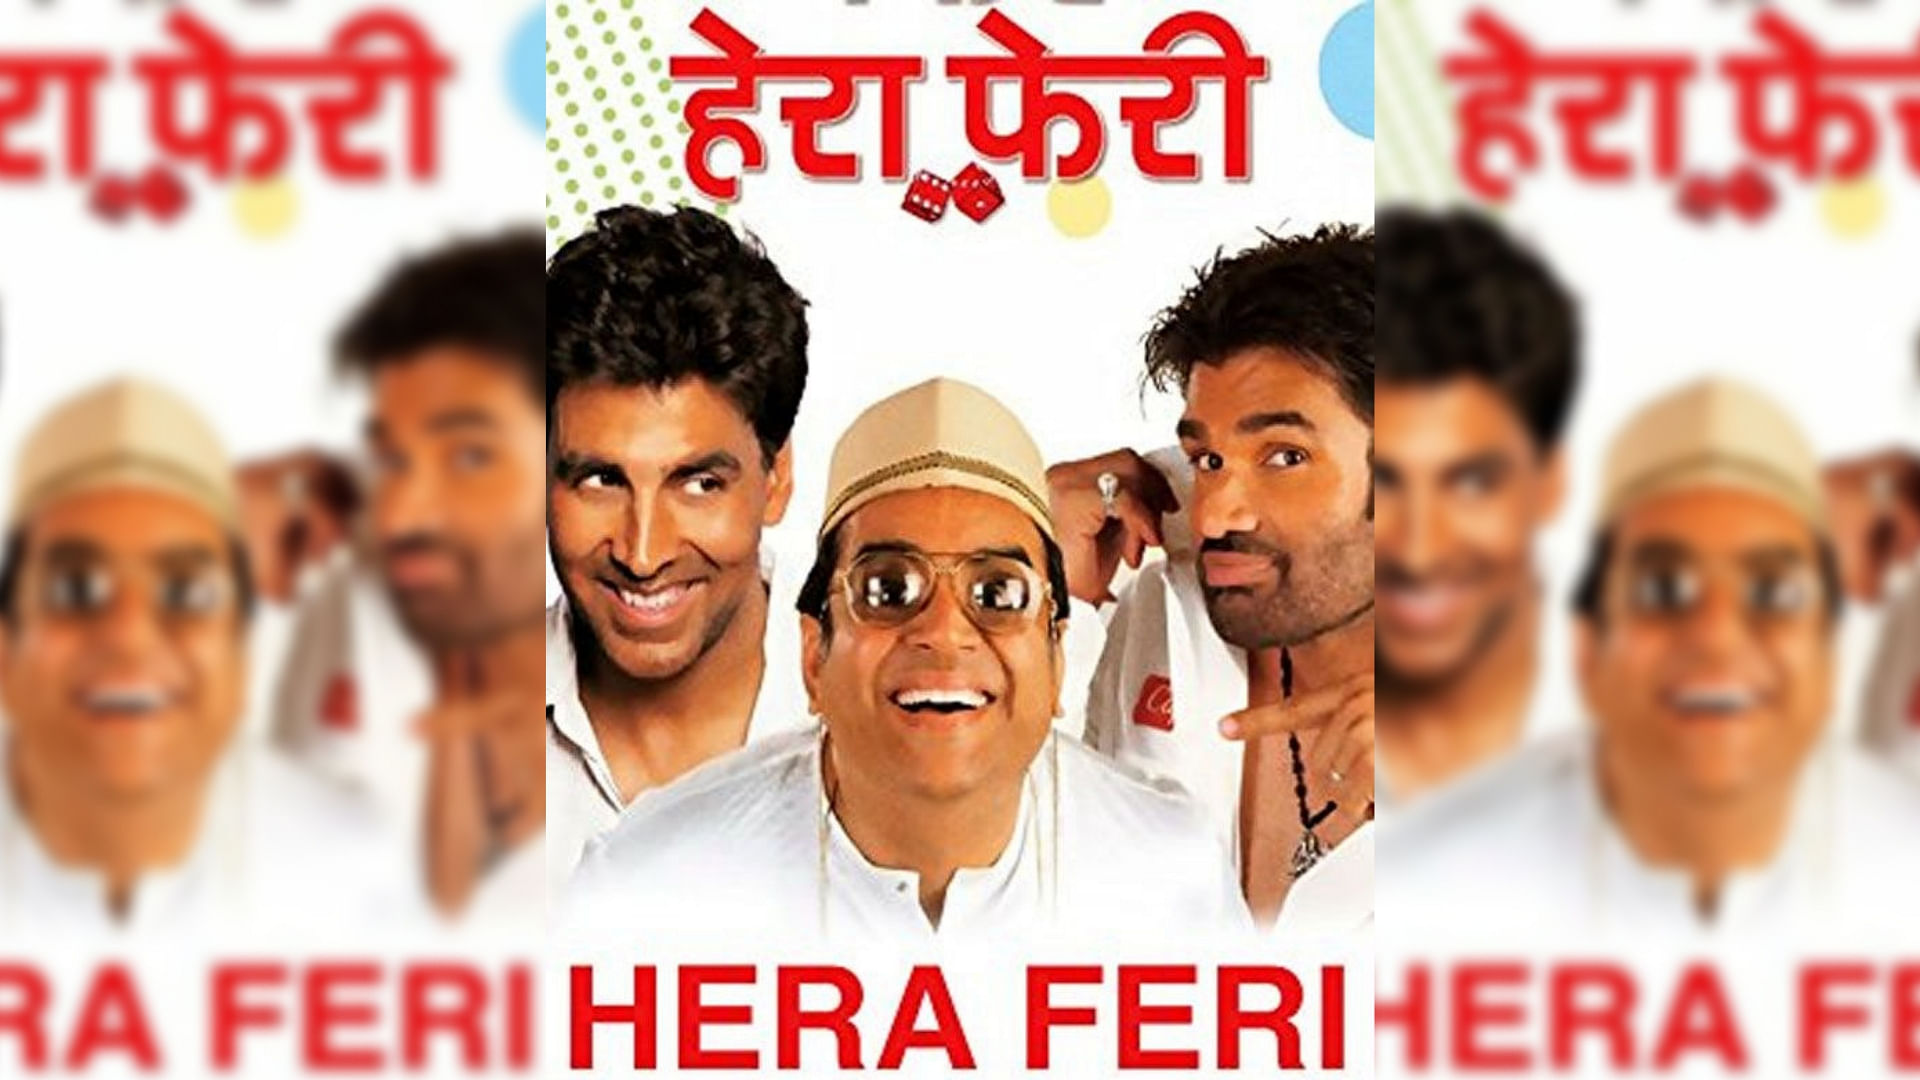 अक्षय कुमार, सुनील शेट्टी और परेश रावल की कॉमेडी डोज फिल्म ‘हेरा फेरा’ का इंतार खत्म हो गया है.&nbsp;